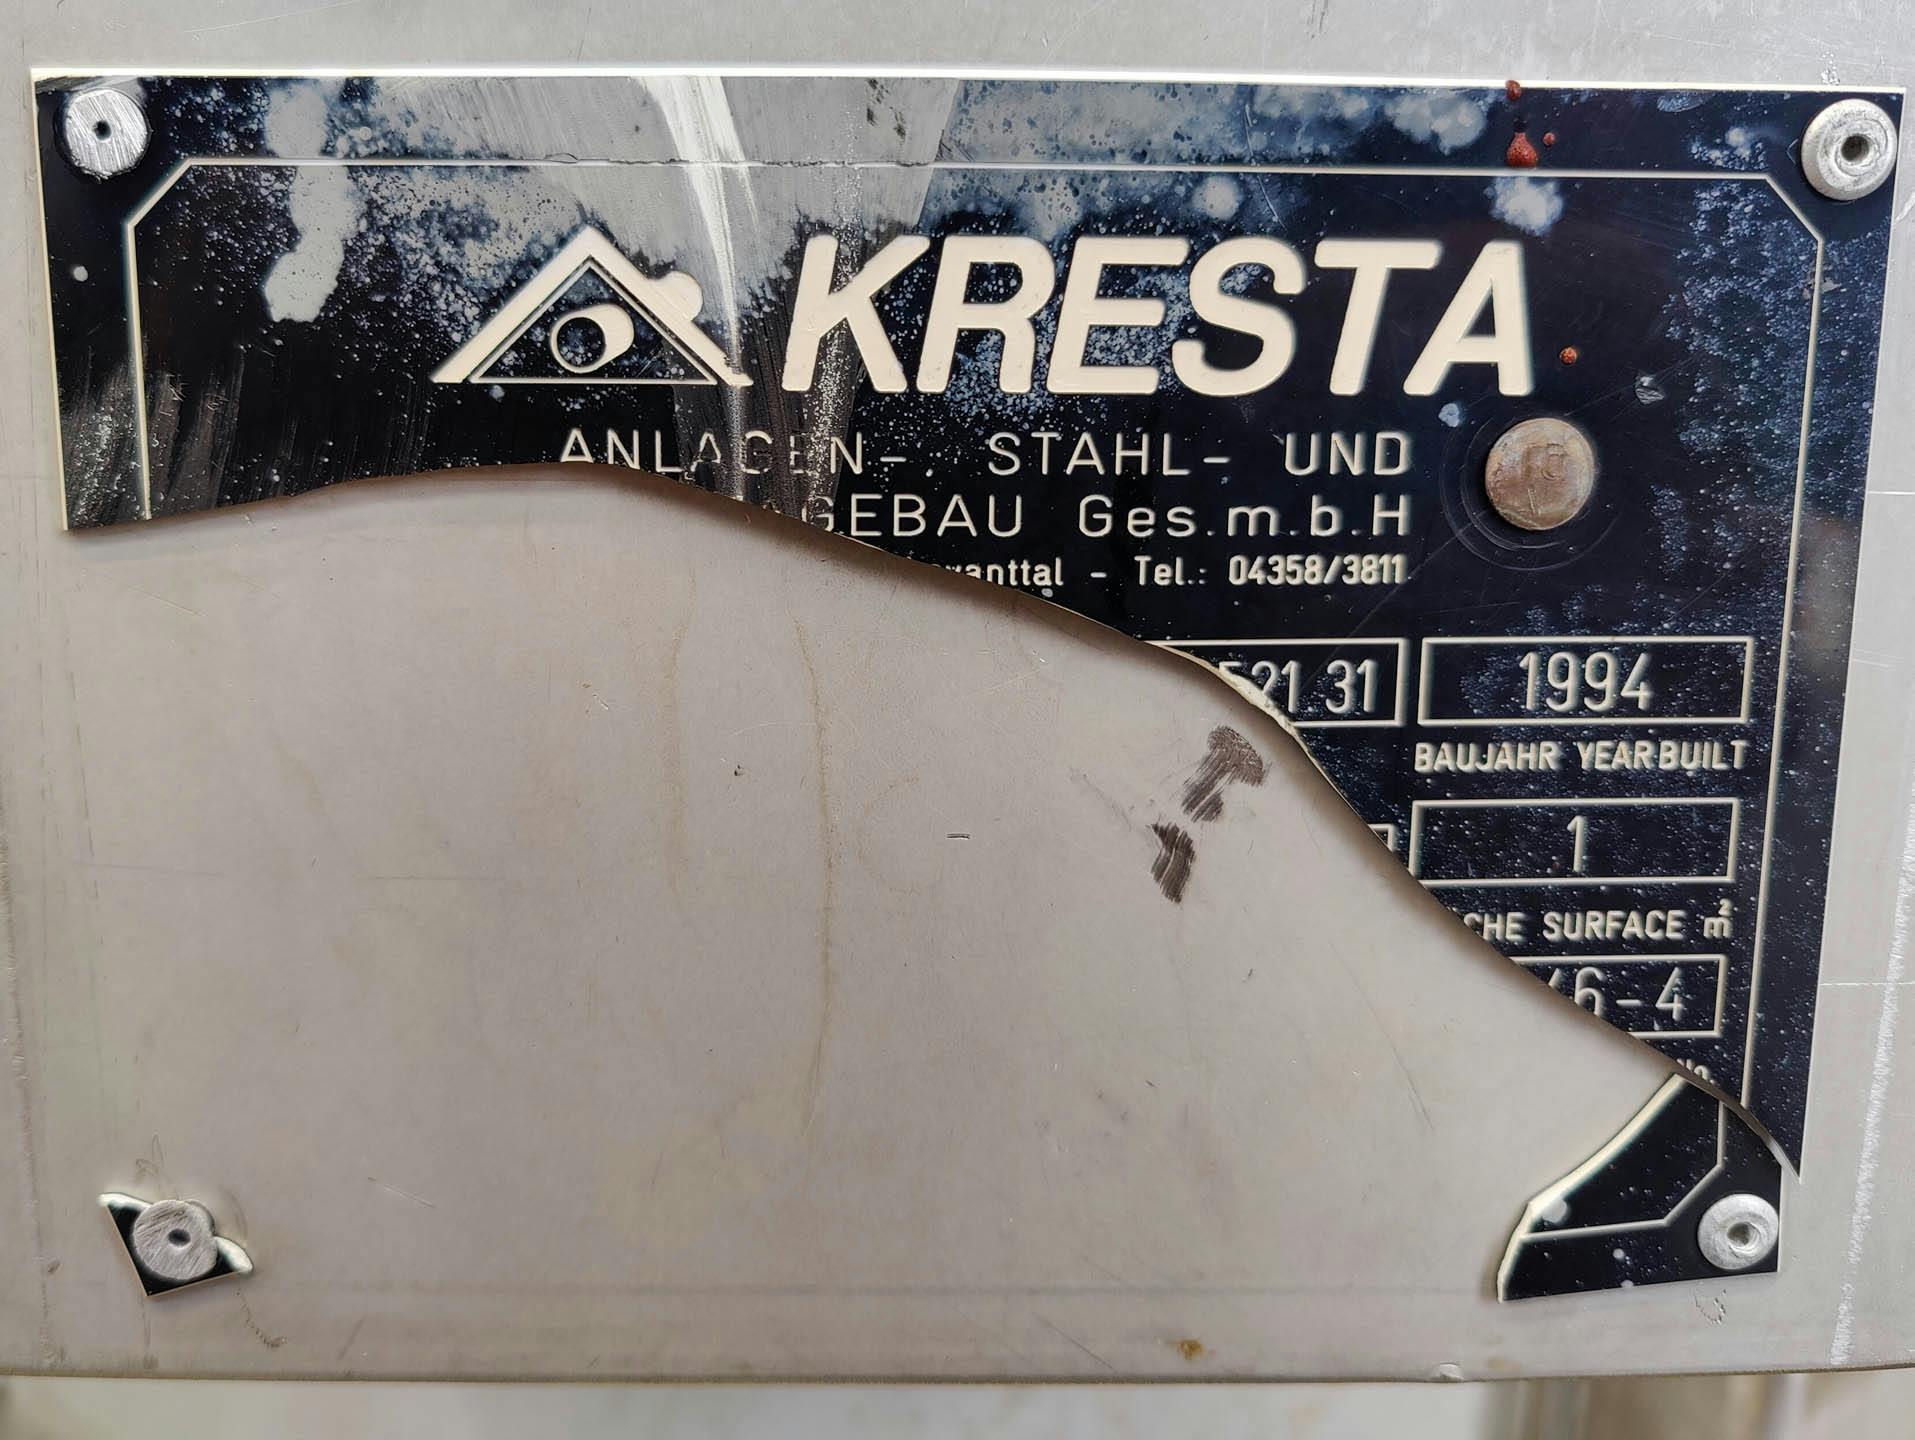 Kresta 250 Ltr. - Герметичный сосуд - image 7